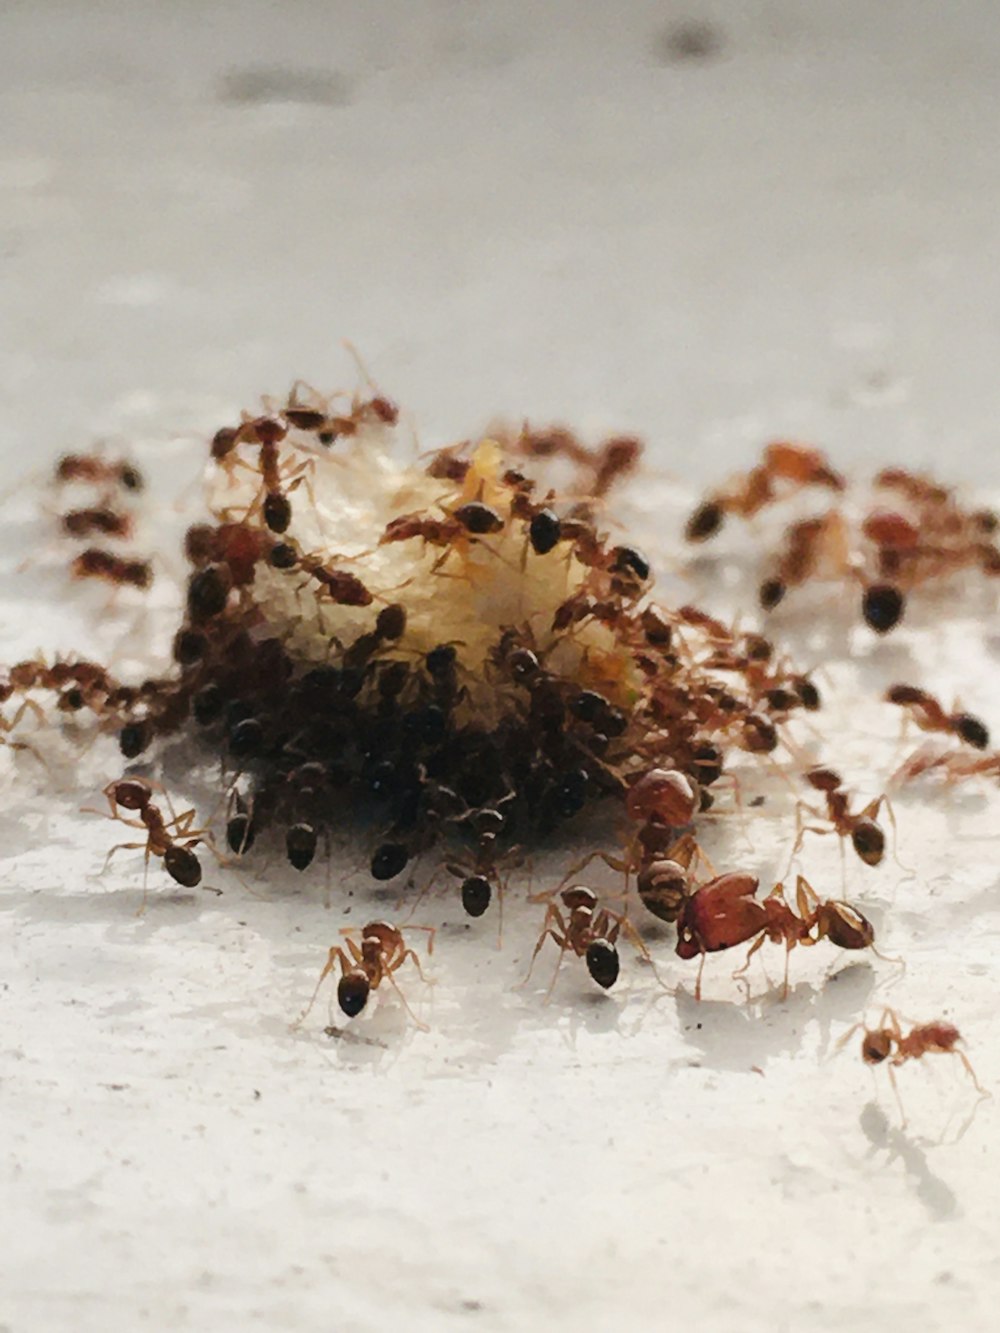 fourmi brune et noire sur surface blanche